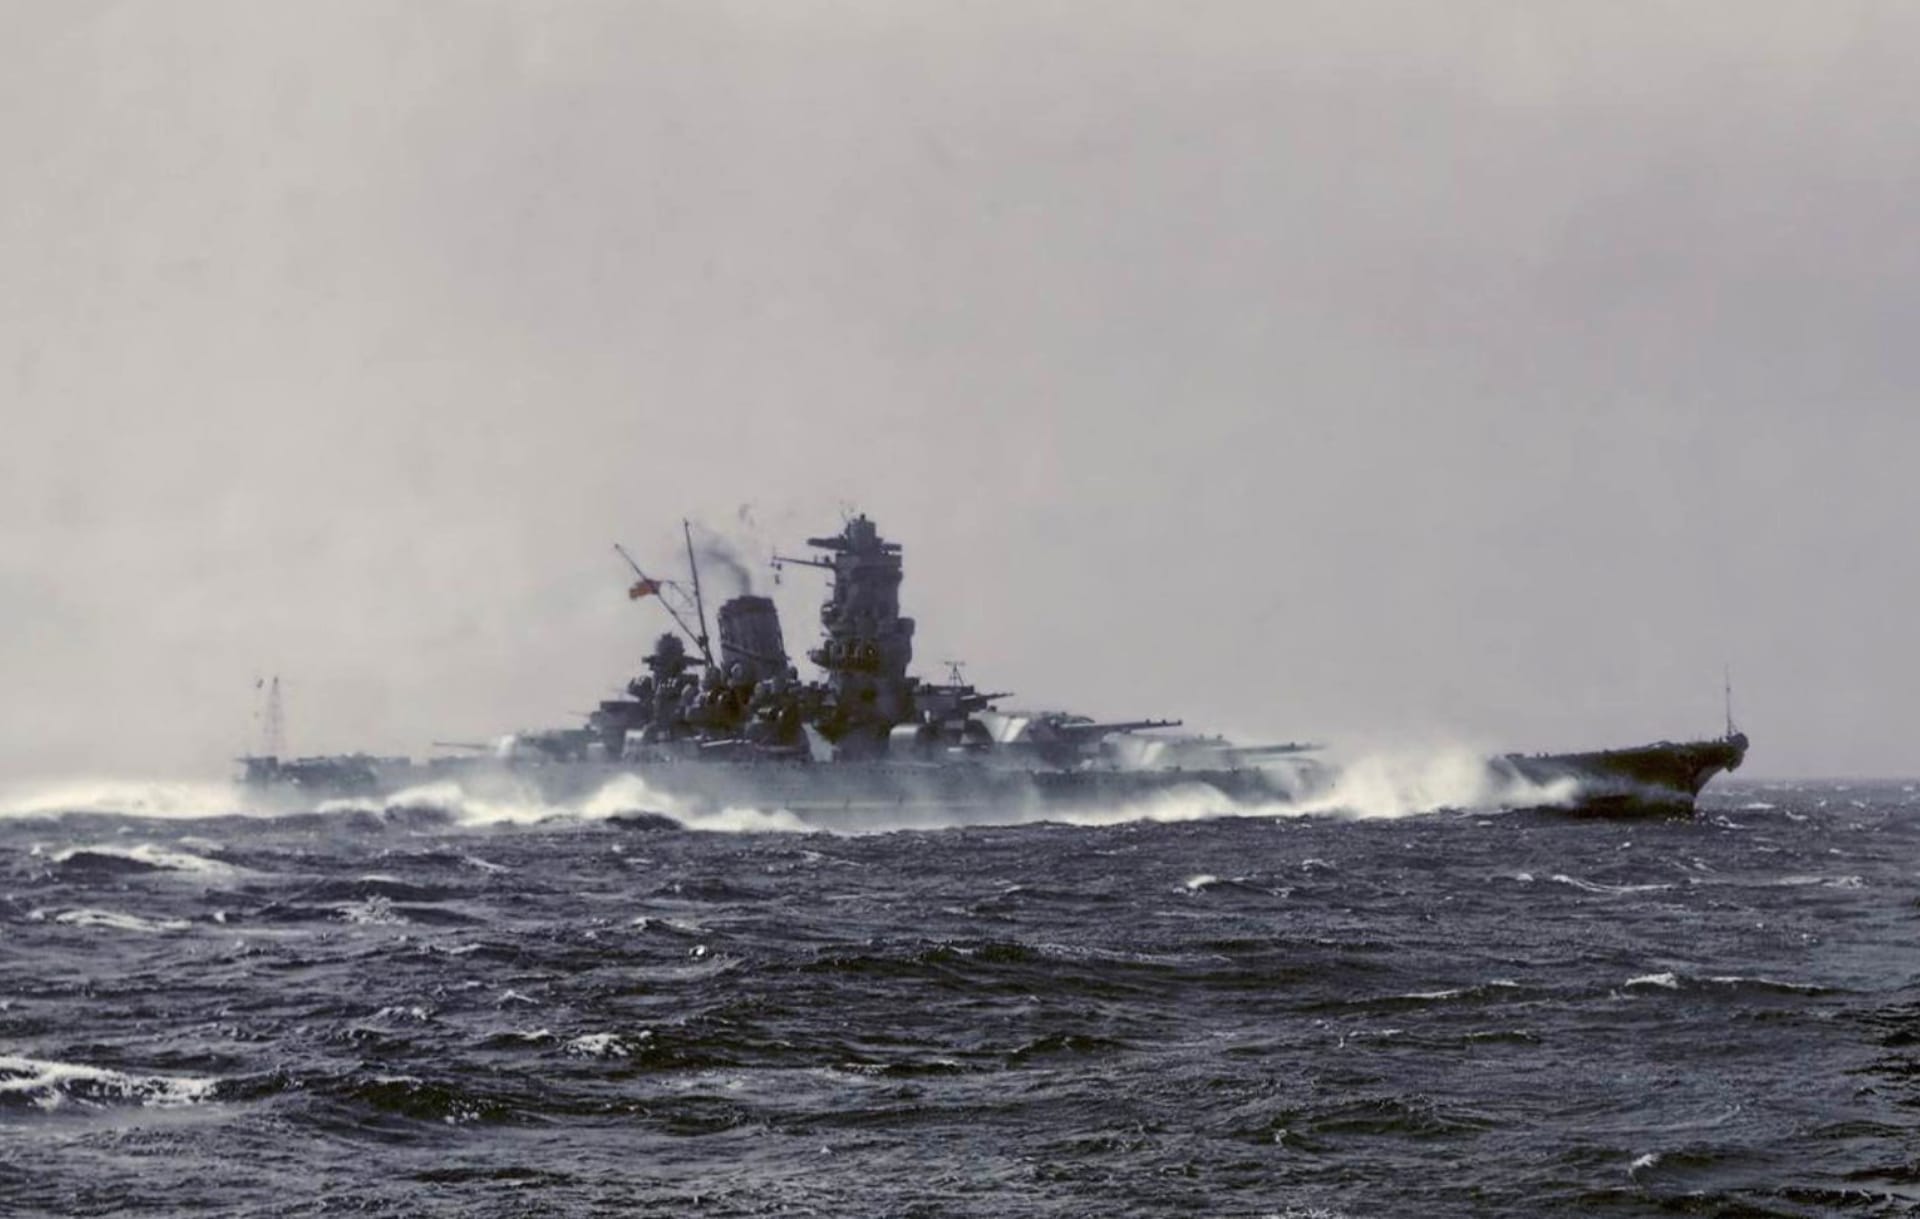 Japanese battleship Yamato wallpapers HD quality